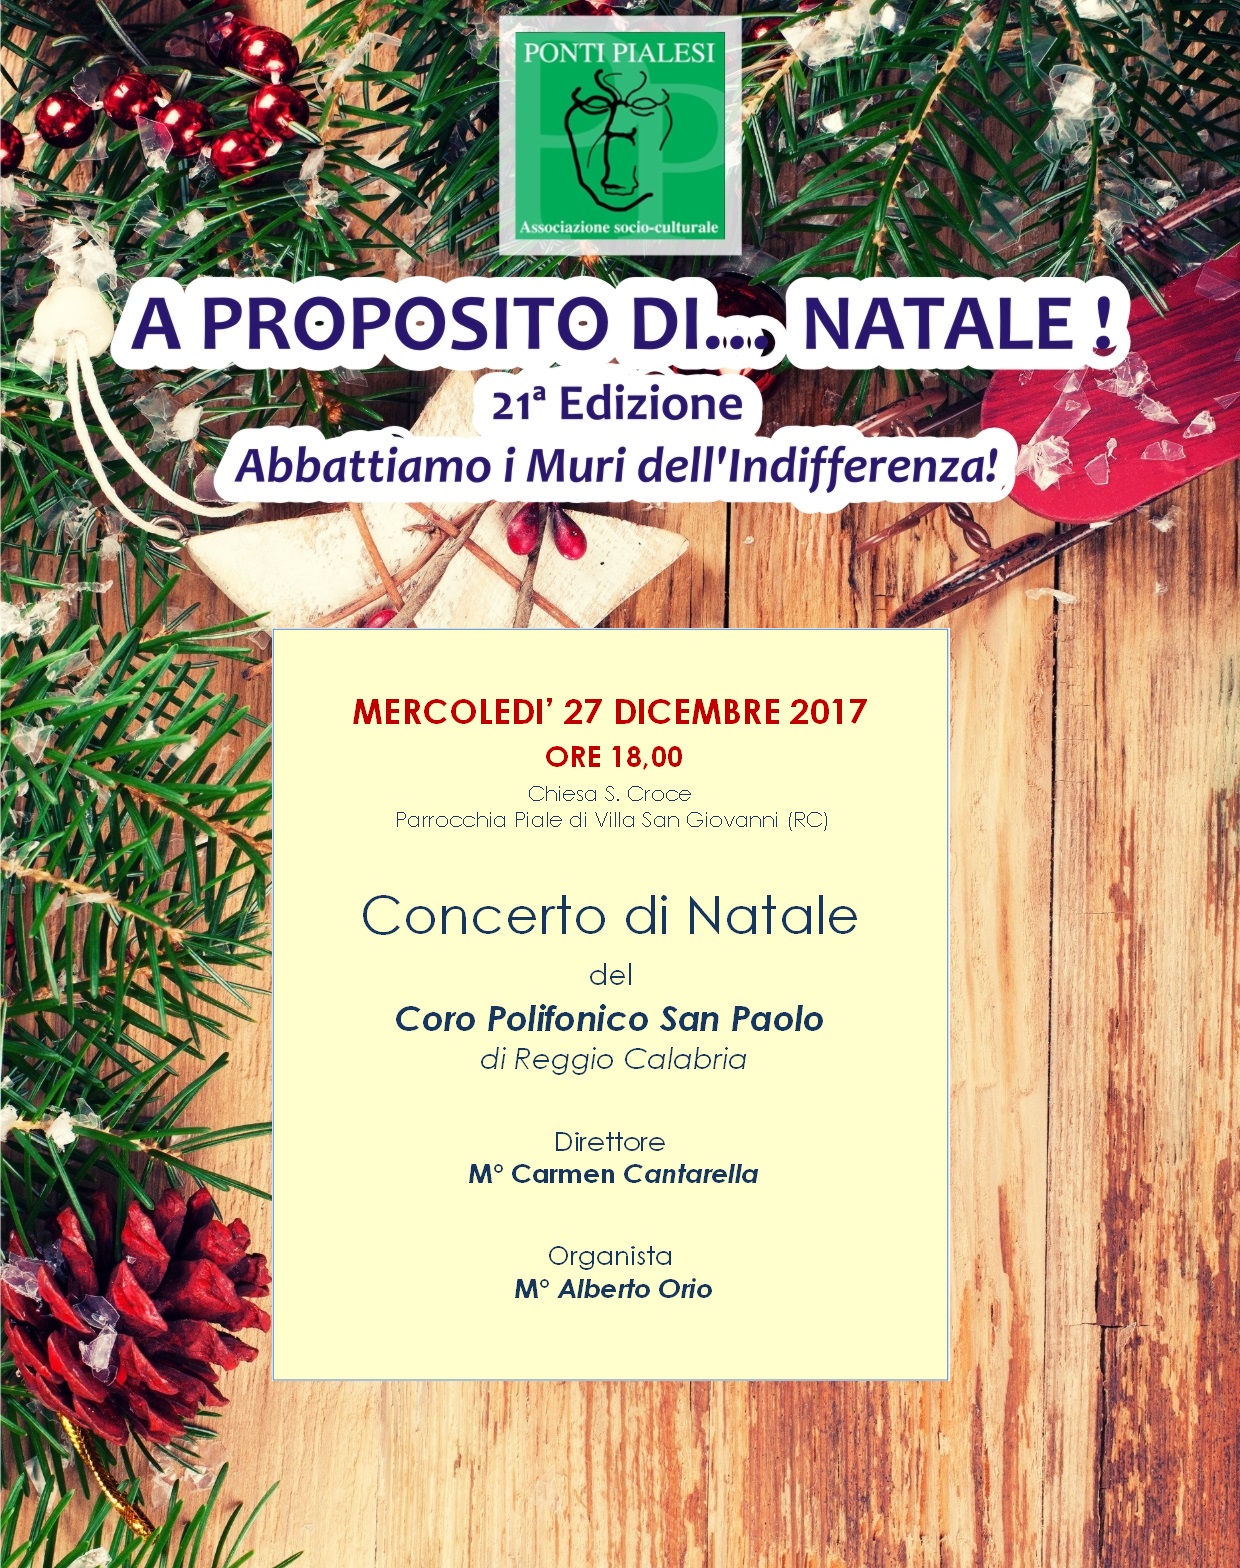 PONTI PIALESI - CONCERTO DI NATALE del Coro San Paolo di Reggio Calabria - 27 dic 2017